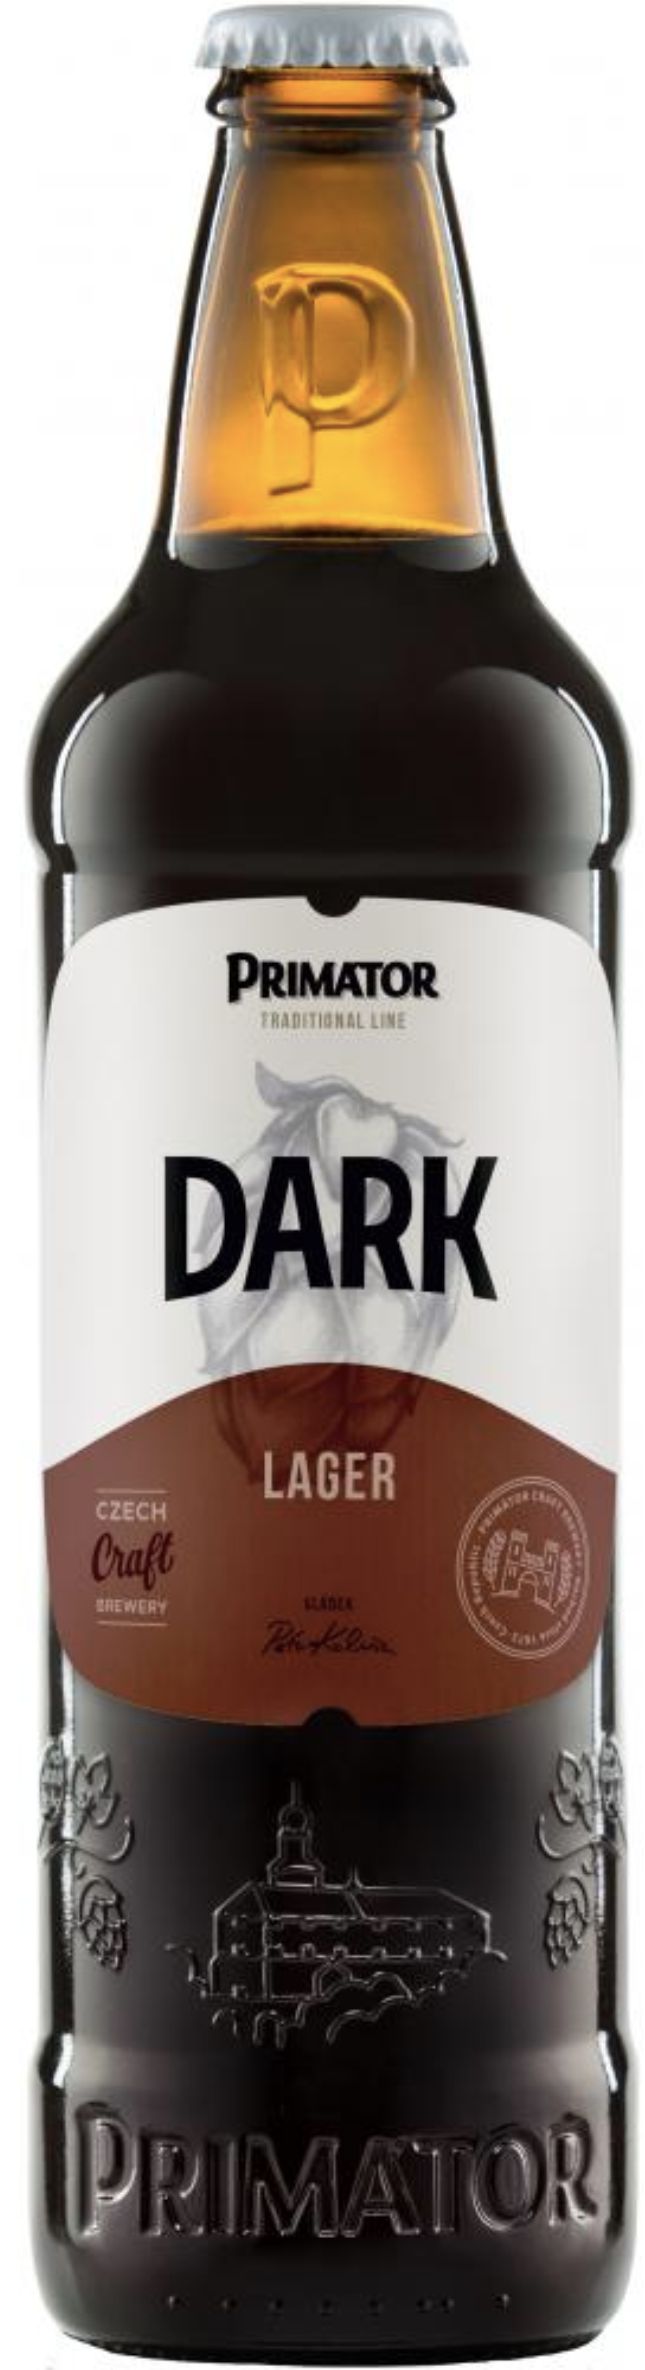 Пиво Приматор Темное Премиум  пастеризован. фильтрован. 0,5л бут. алк.4,5%